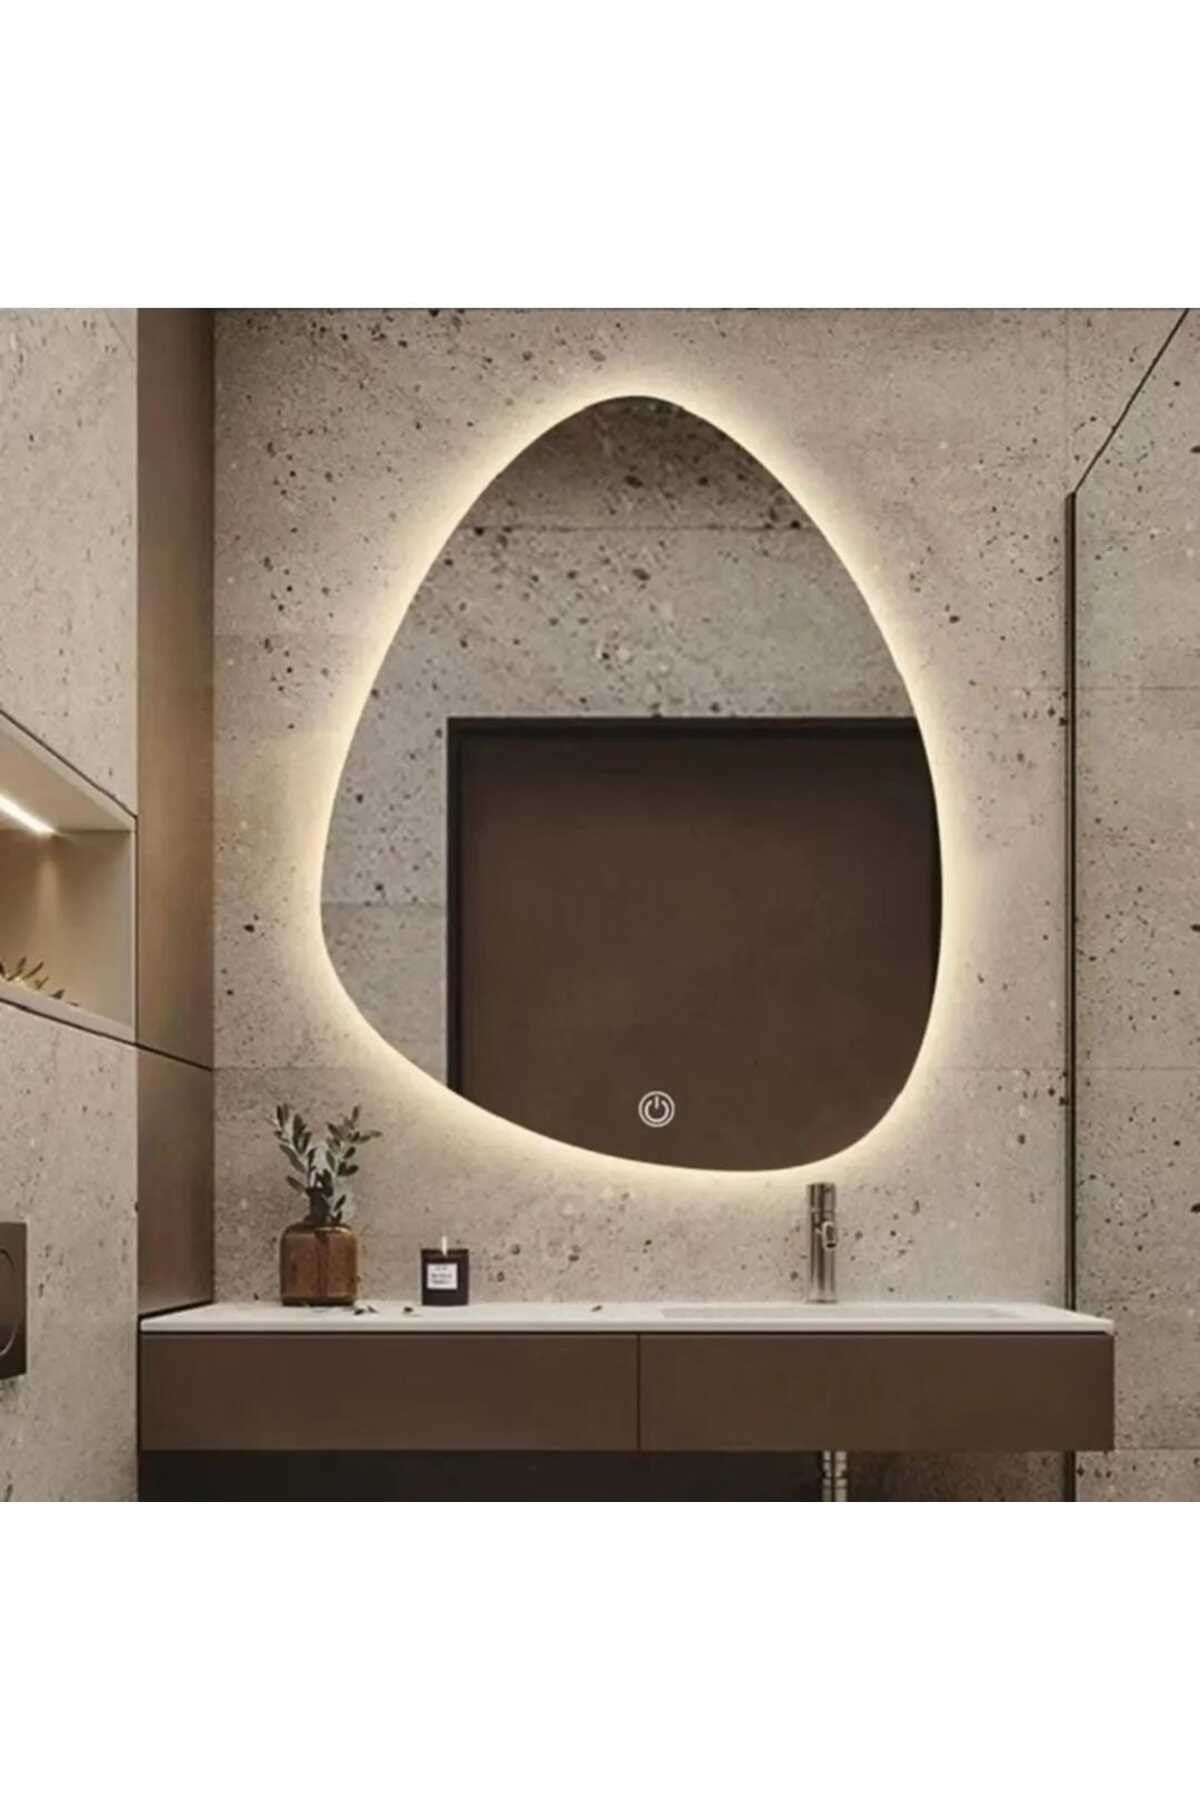 Toprak dekor Asimetrik Dokunmatik Ayna Ledli Ayna(DİMMER ÖZELLİKLİ)banyo Aynası